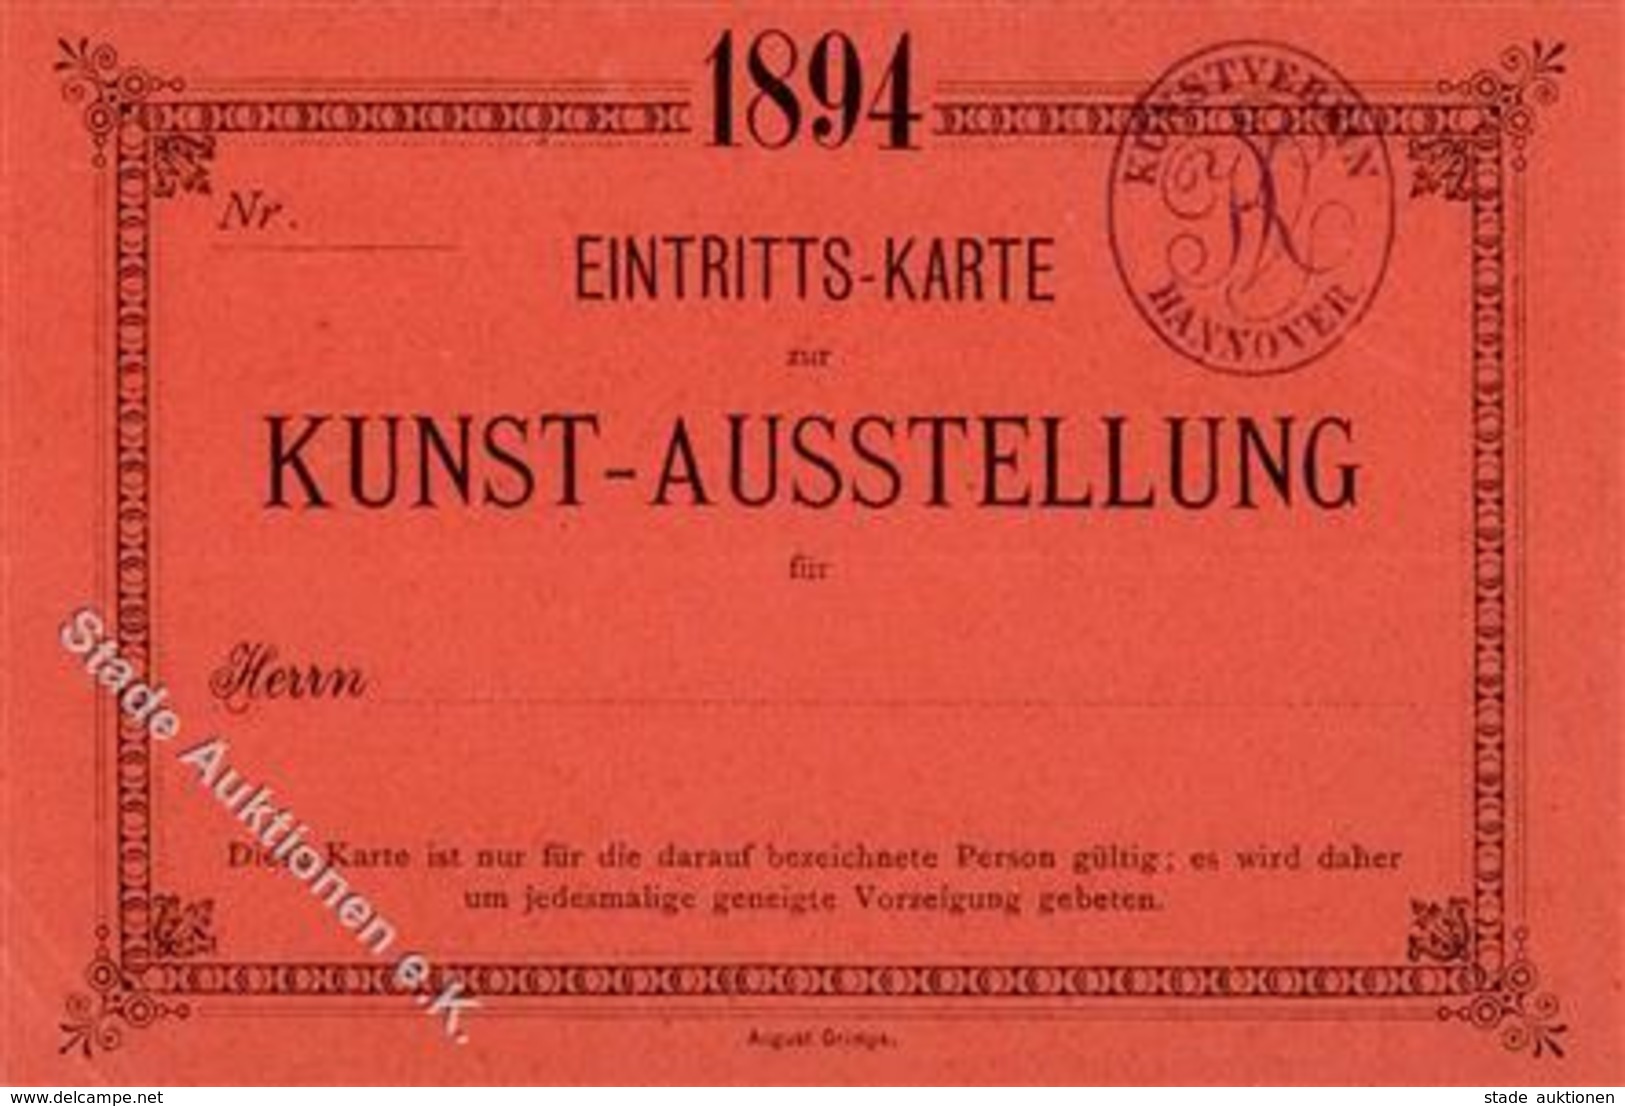 Kunstausstellung Kunstverein Hannover Eintrittskarte 1894 I-II - Exhibitions